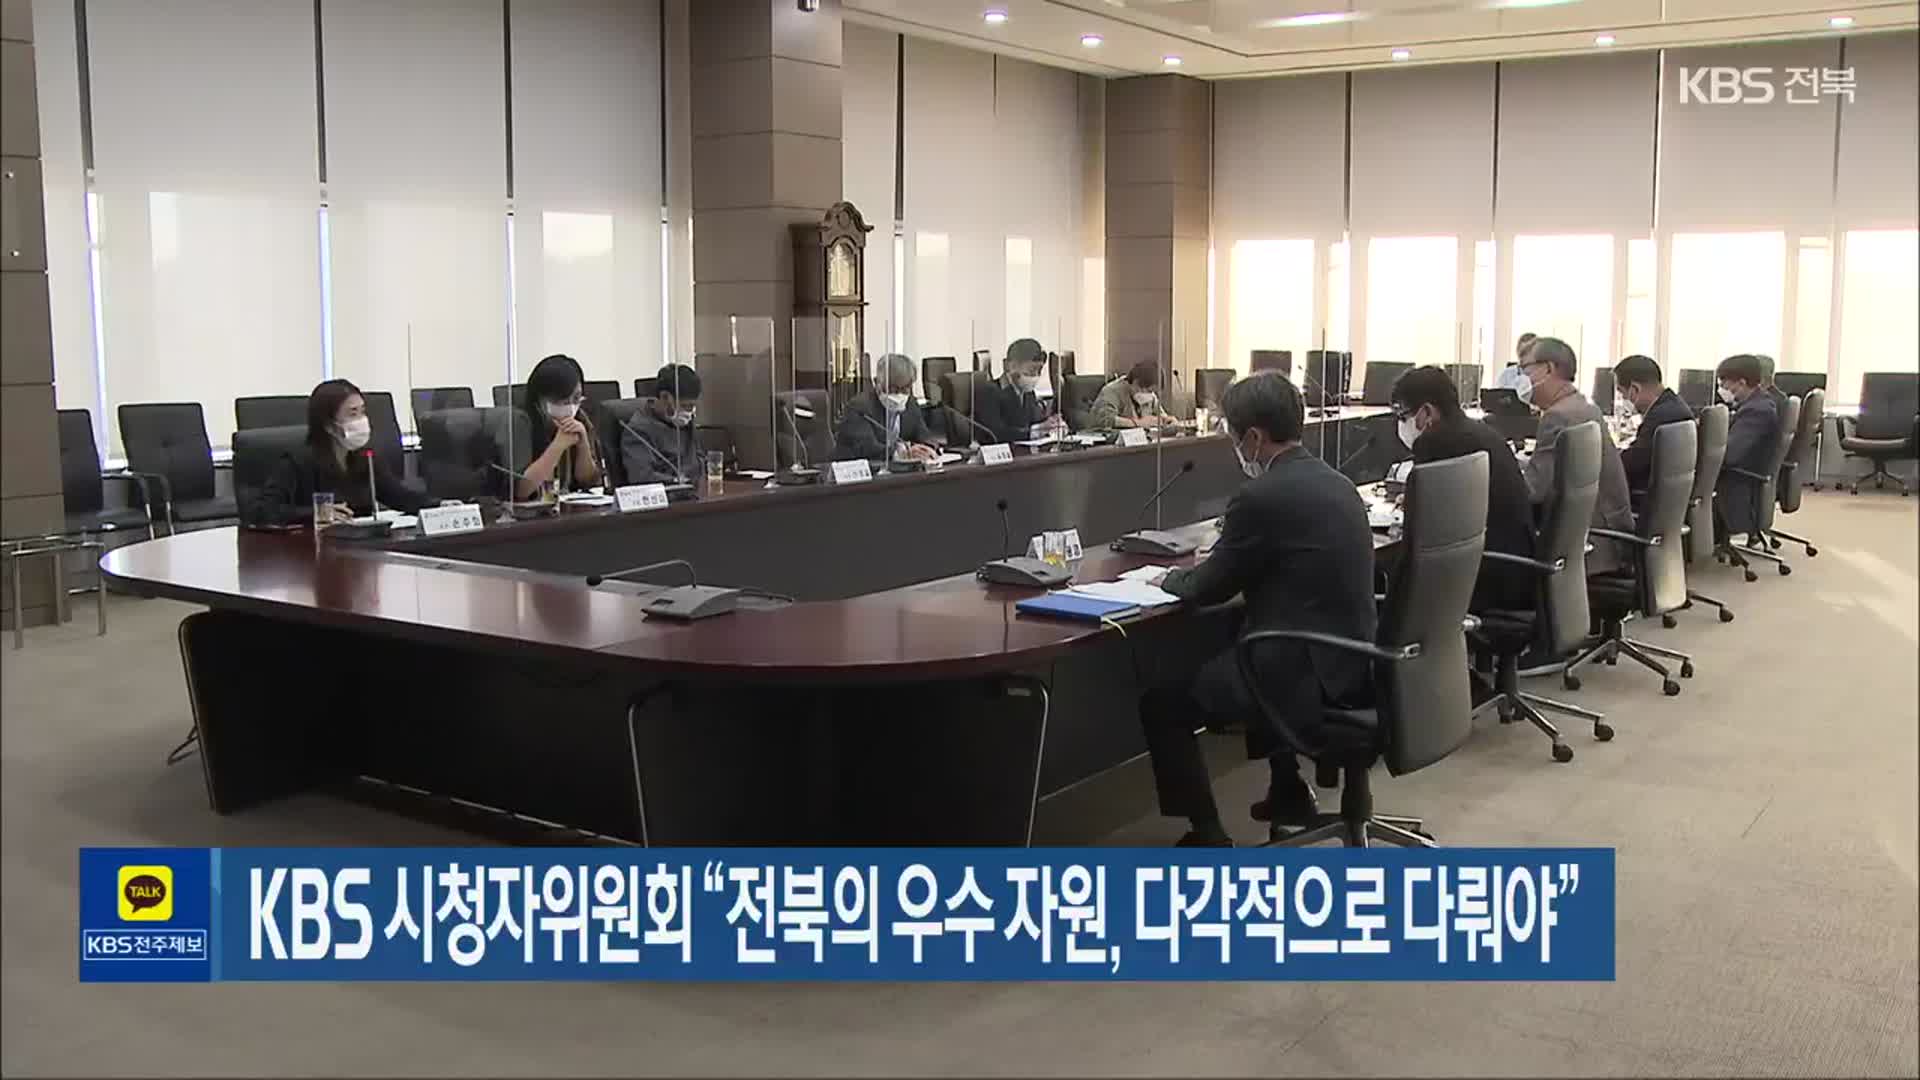 KBS 시청자위원회 “전북의 우수 자원, 다각적으로 다뤄야”